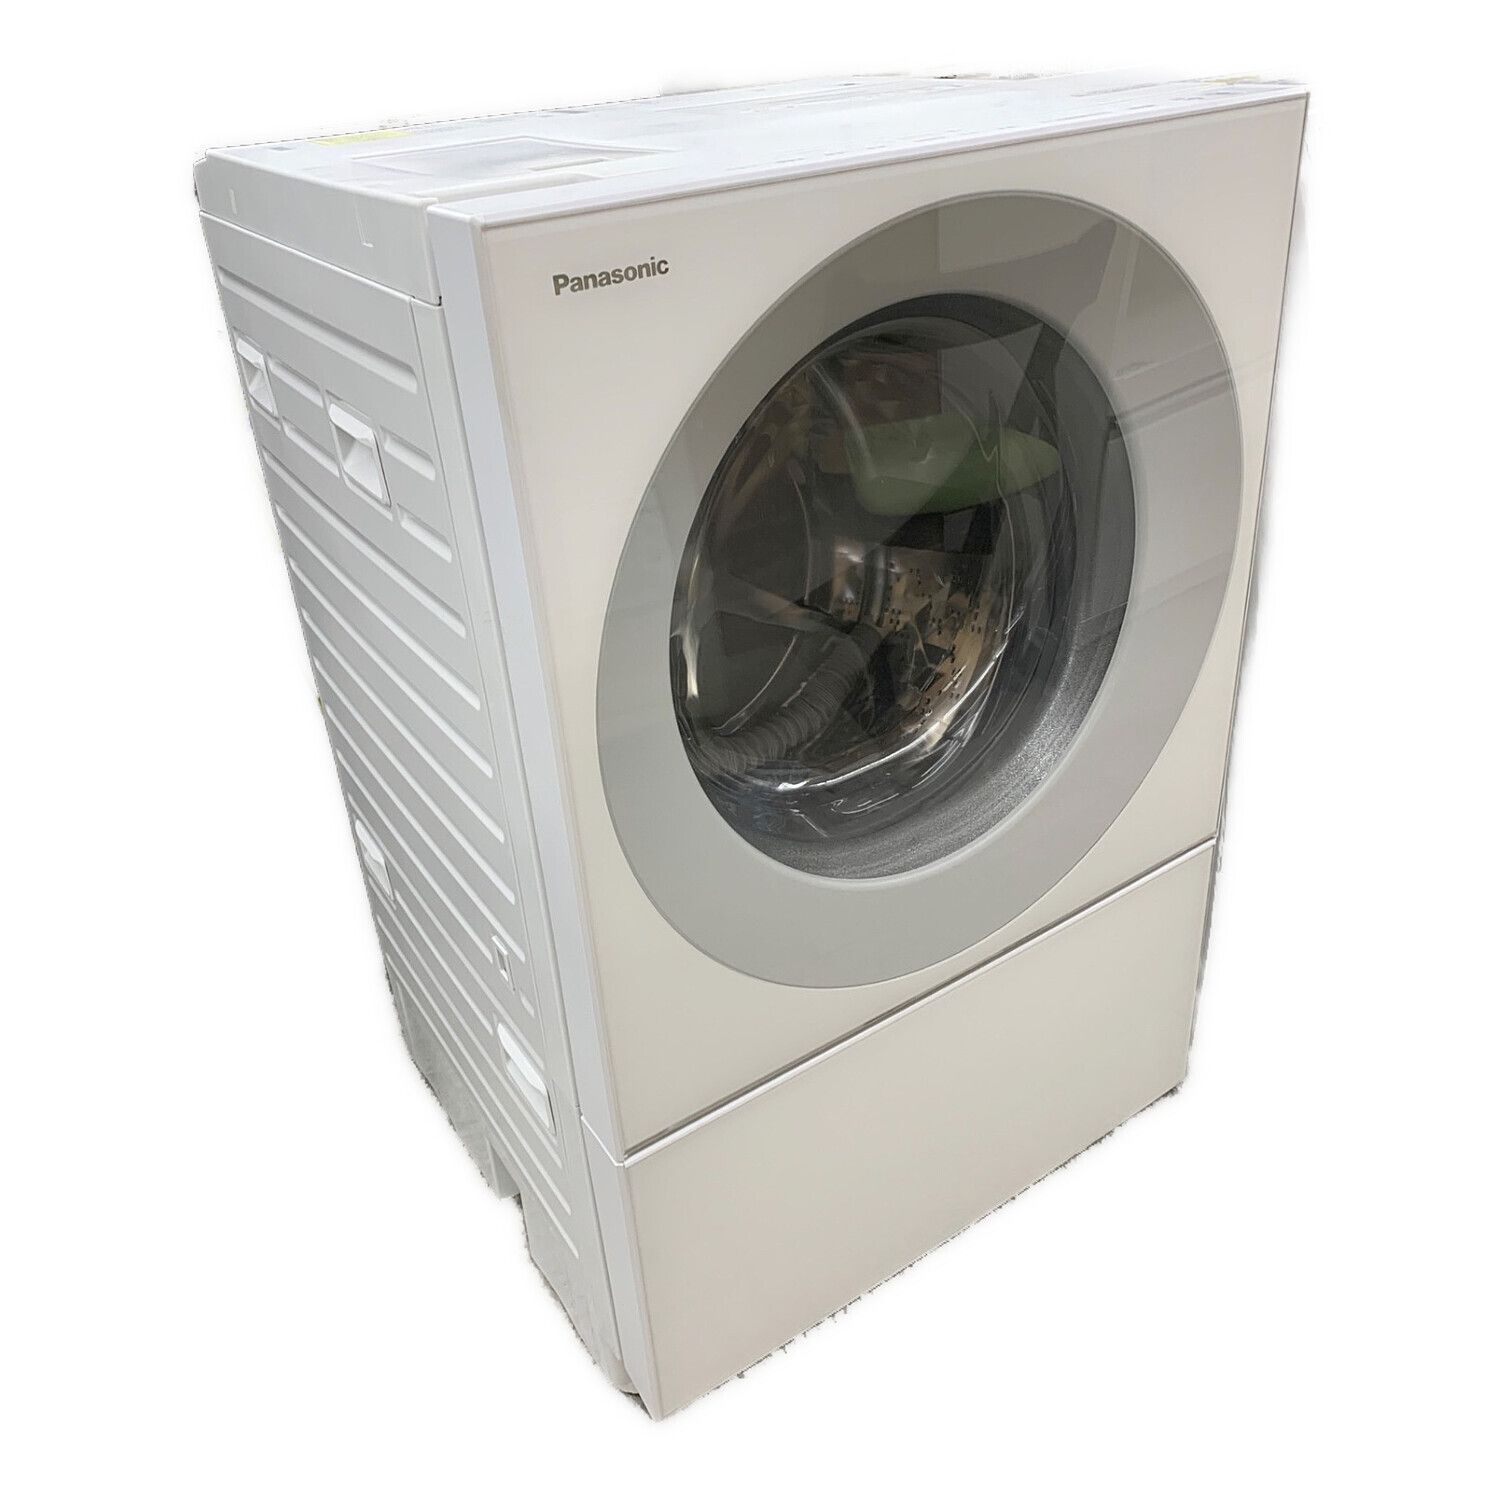 Panasonic (パナソニック) ドラム式洗濯乾燥機 ※輸送用ボルト付 7.0kg ...